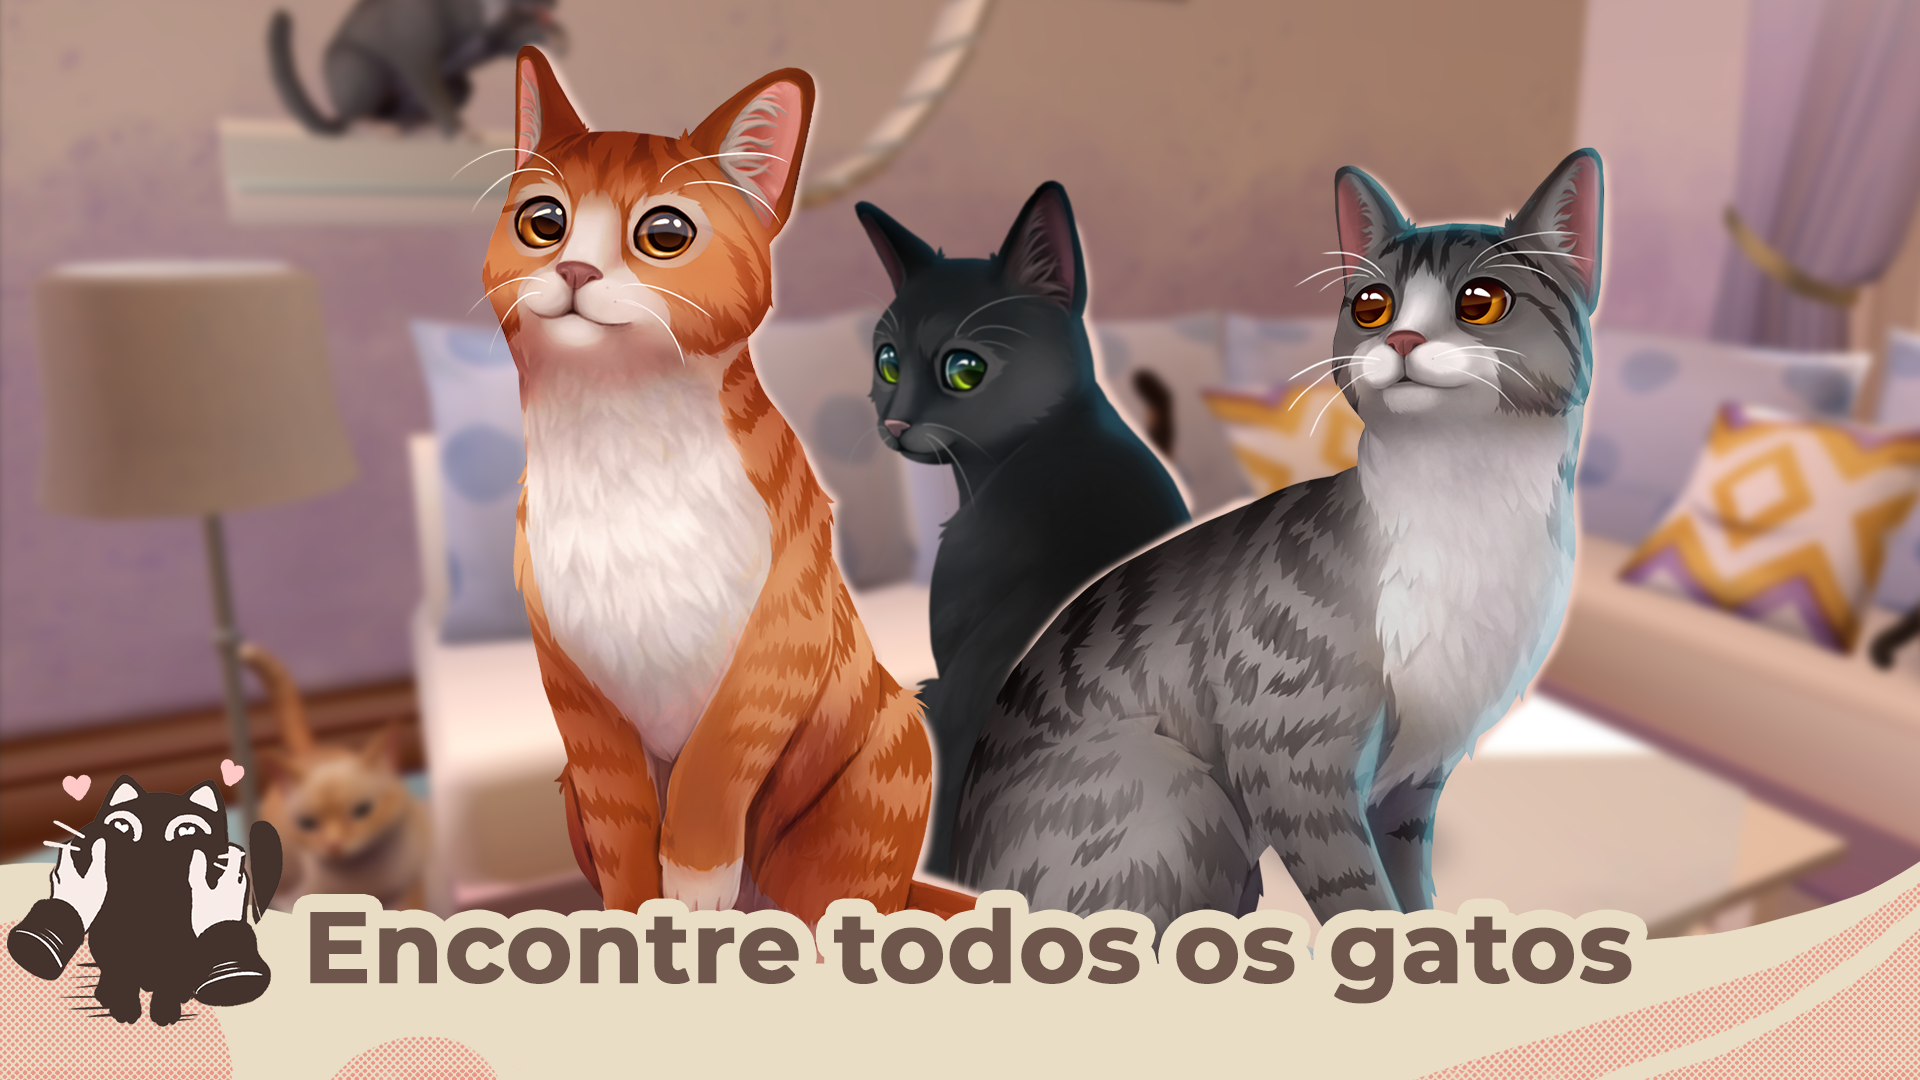 Cat Rescue Story é um jogo para amantes de gatos - Android - SAPO Tek